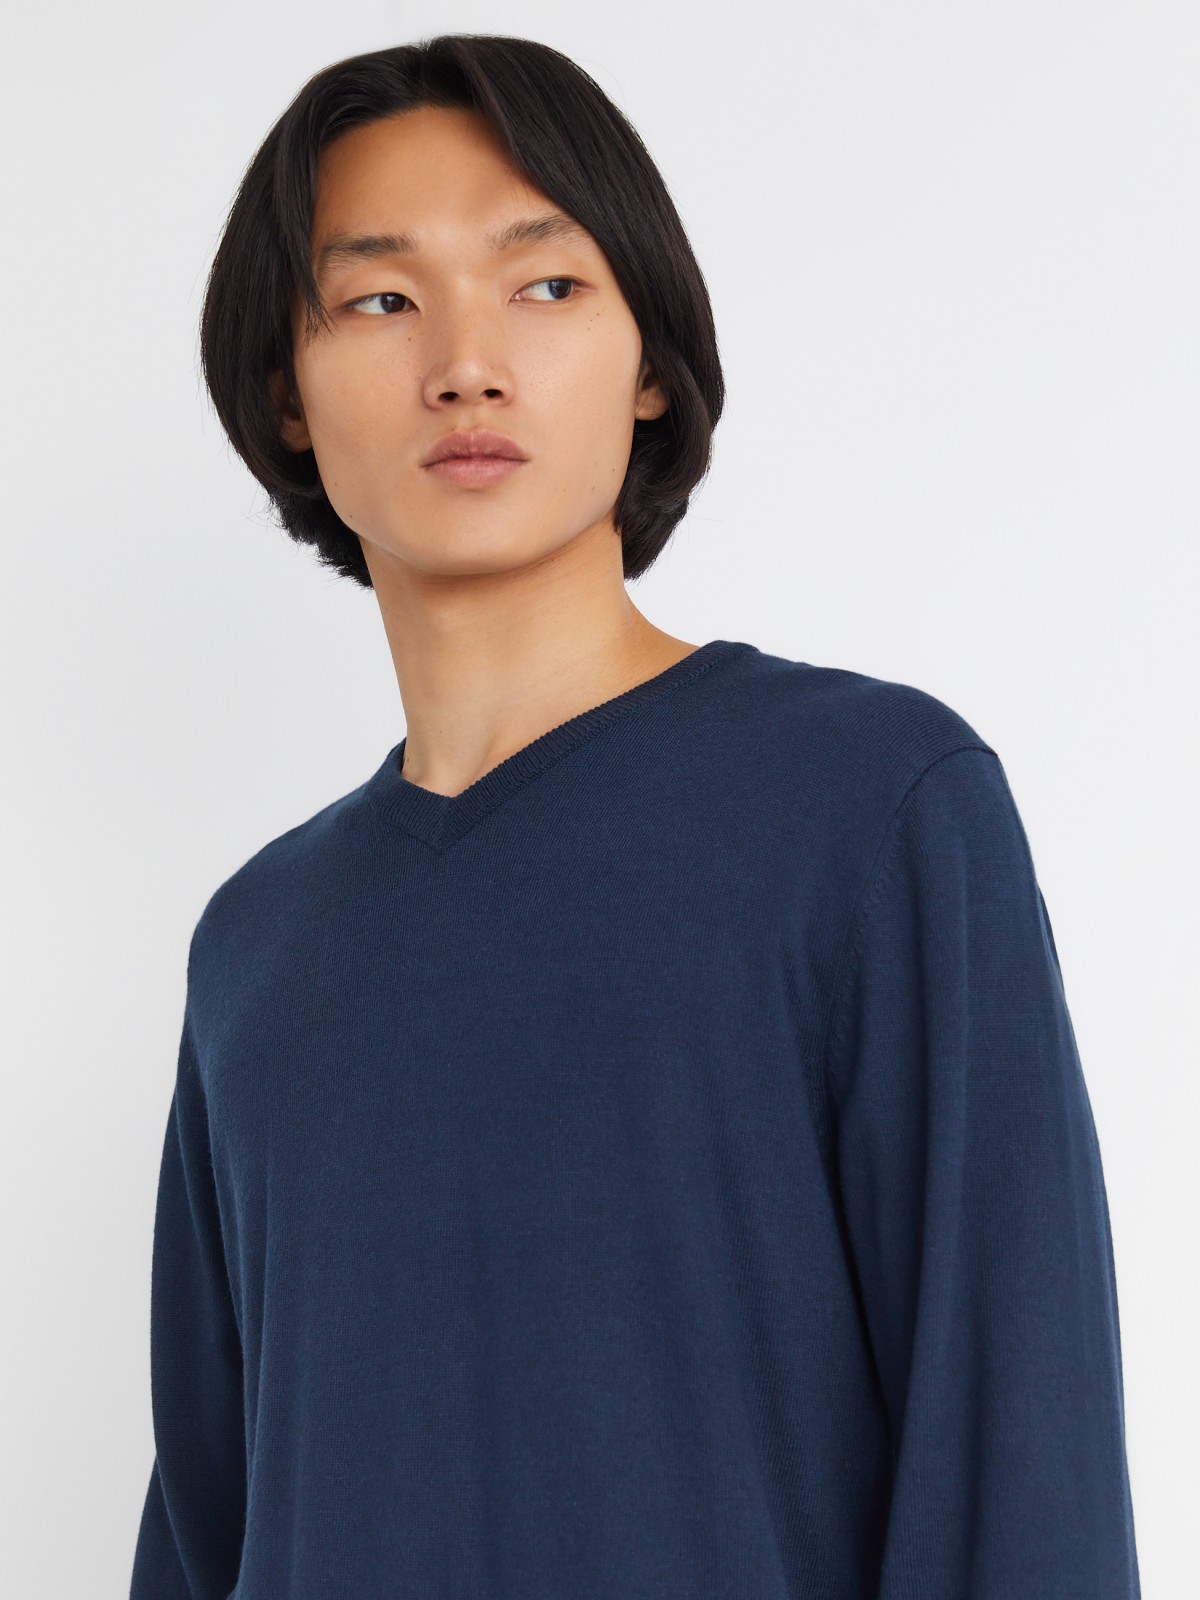 Шерстяной трикотажный пуловер с треугольным вырезом и длинным рукавом zolla 013346163042, цвет синий, размер M - фото 5